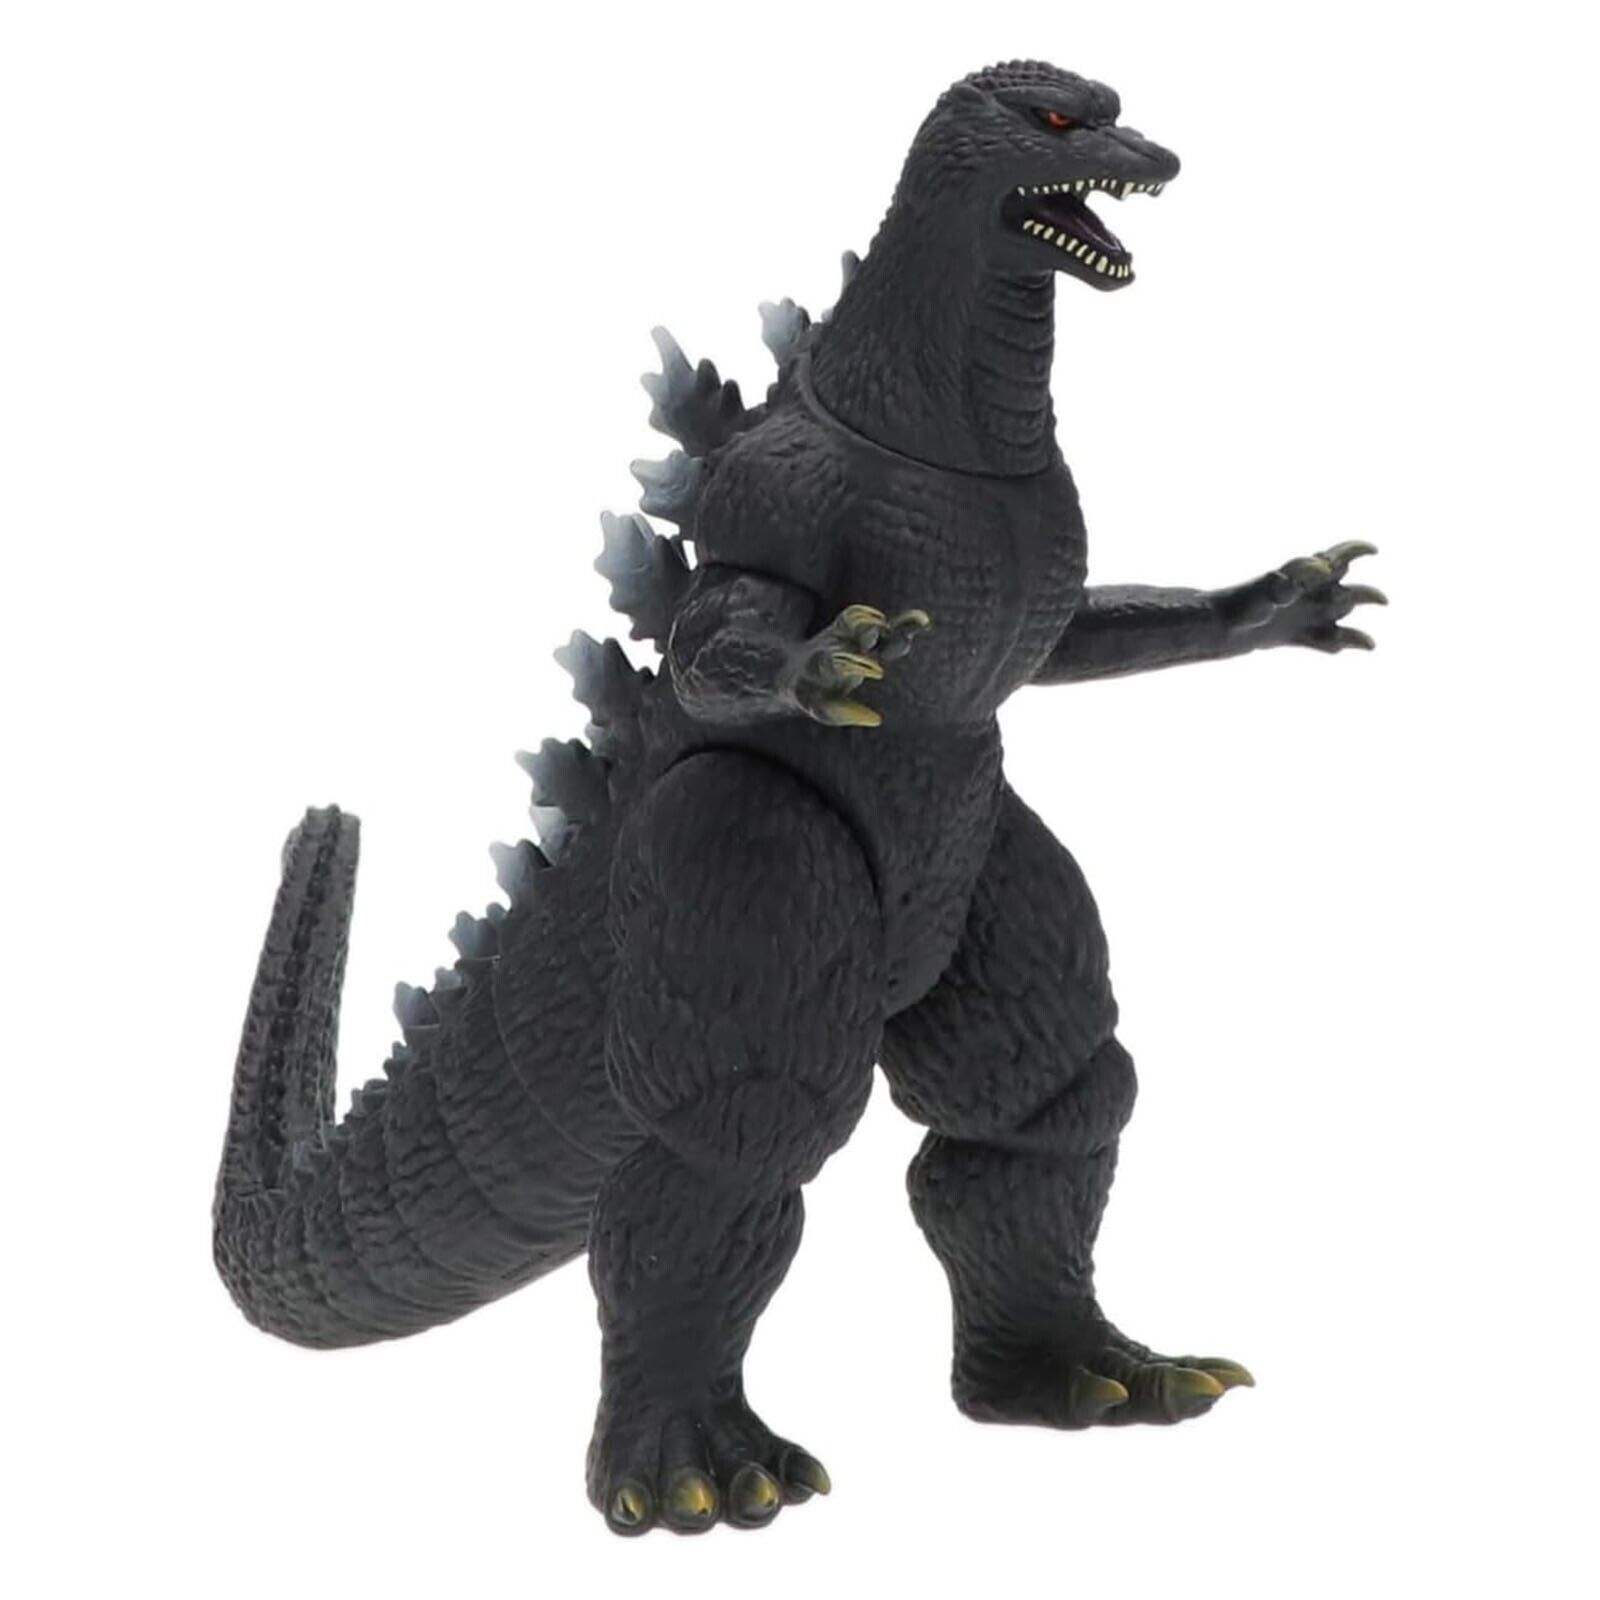 Bandai Godzilla Final Wars Movie Monster Series Godzilla 2004 Figure NEW